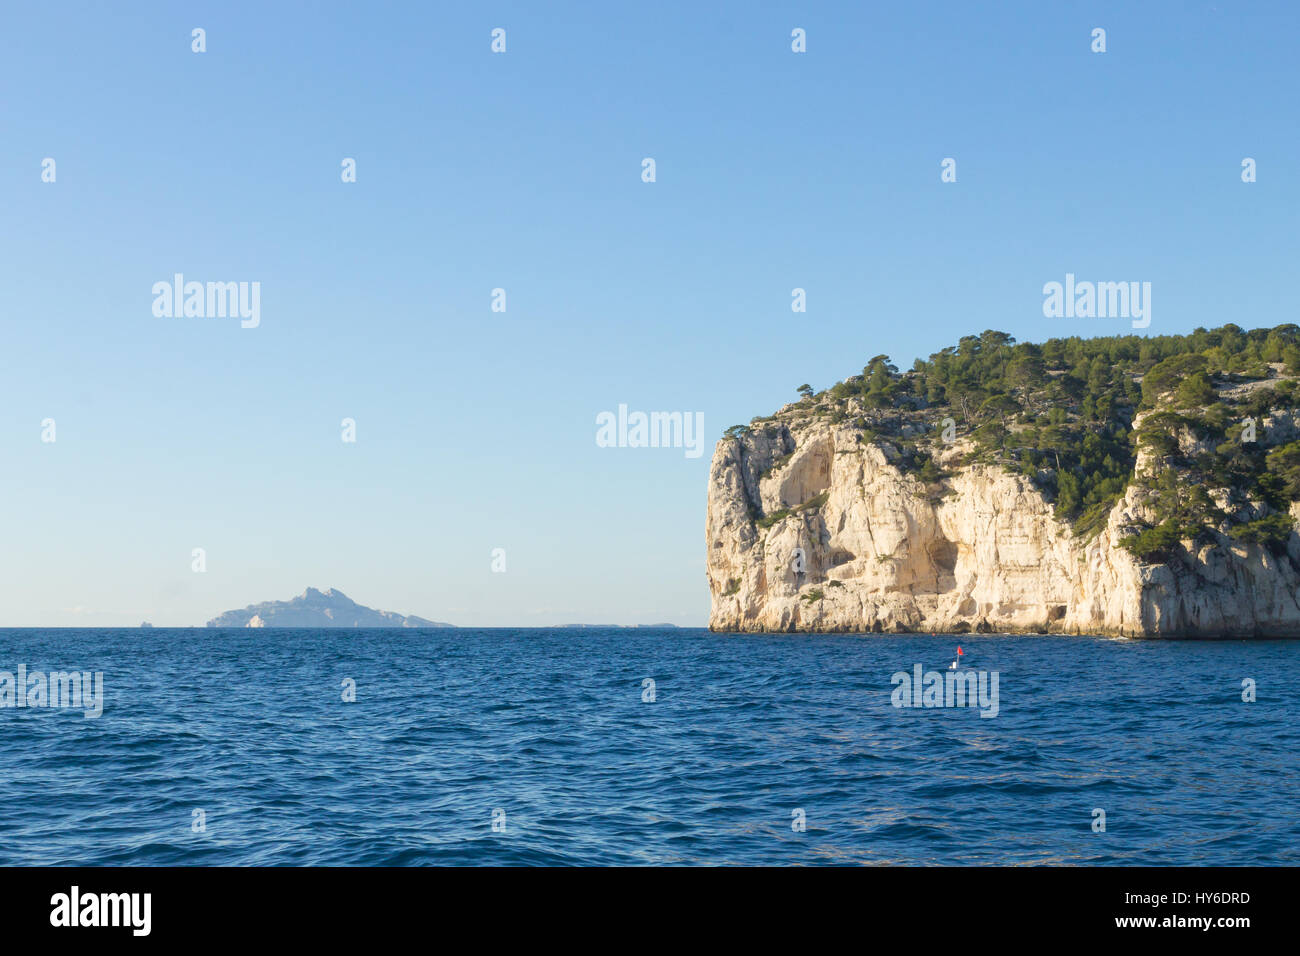 La belle nature des Calanques sur la côte d'Azur France. Parc National des Calanques près de Marseille. Nature et plein air Banque D'Images